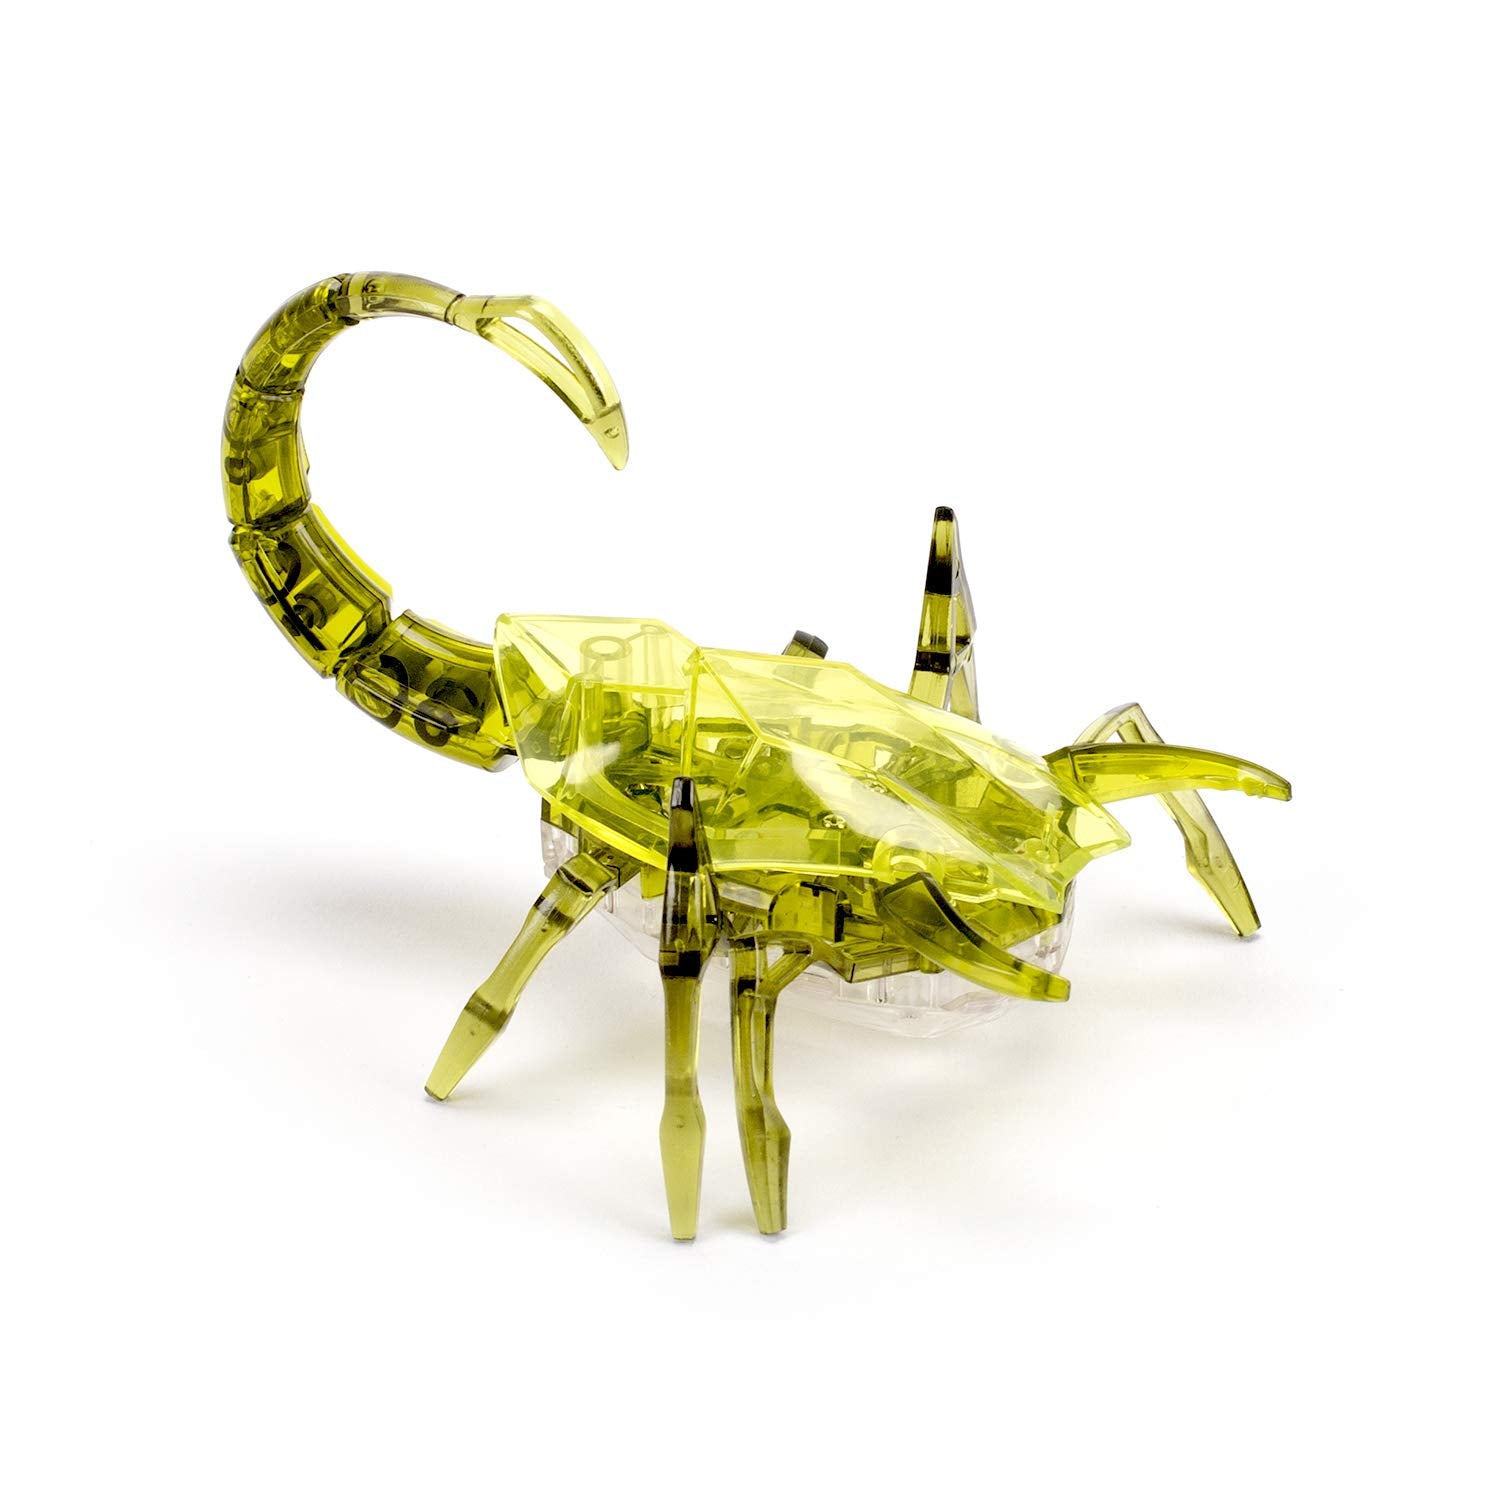 HEXBUG Scorpion, Electronic Autonomous Robotic Pet, Ages 8 and Up (Random Color)